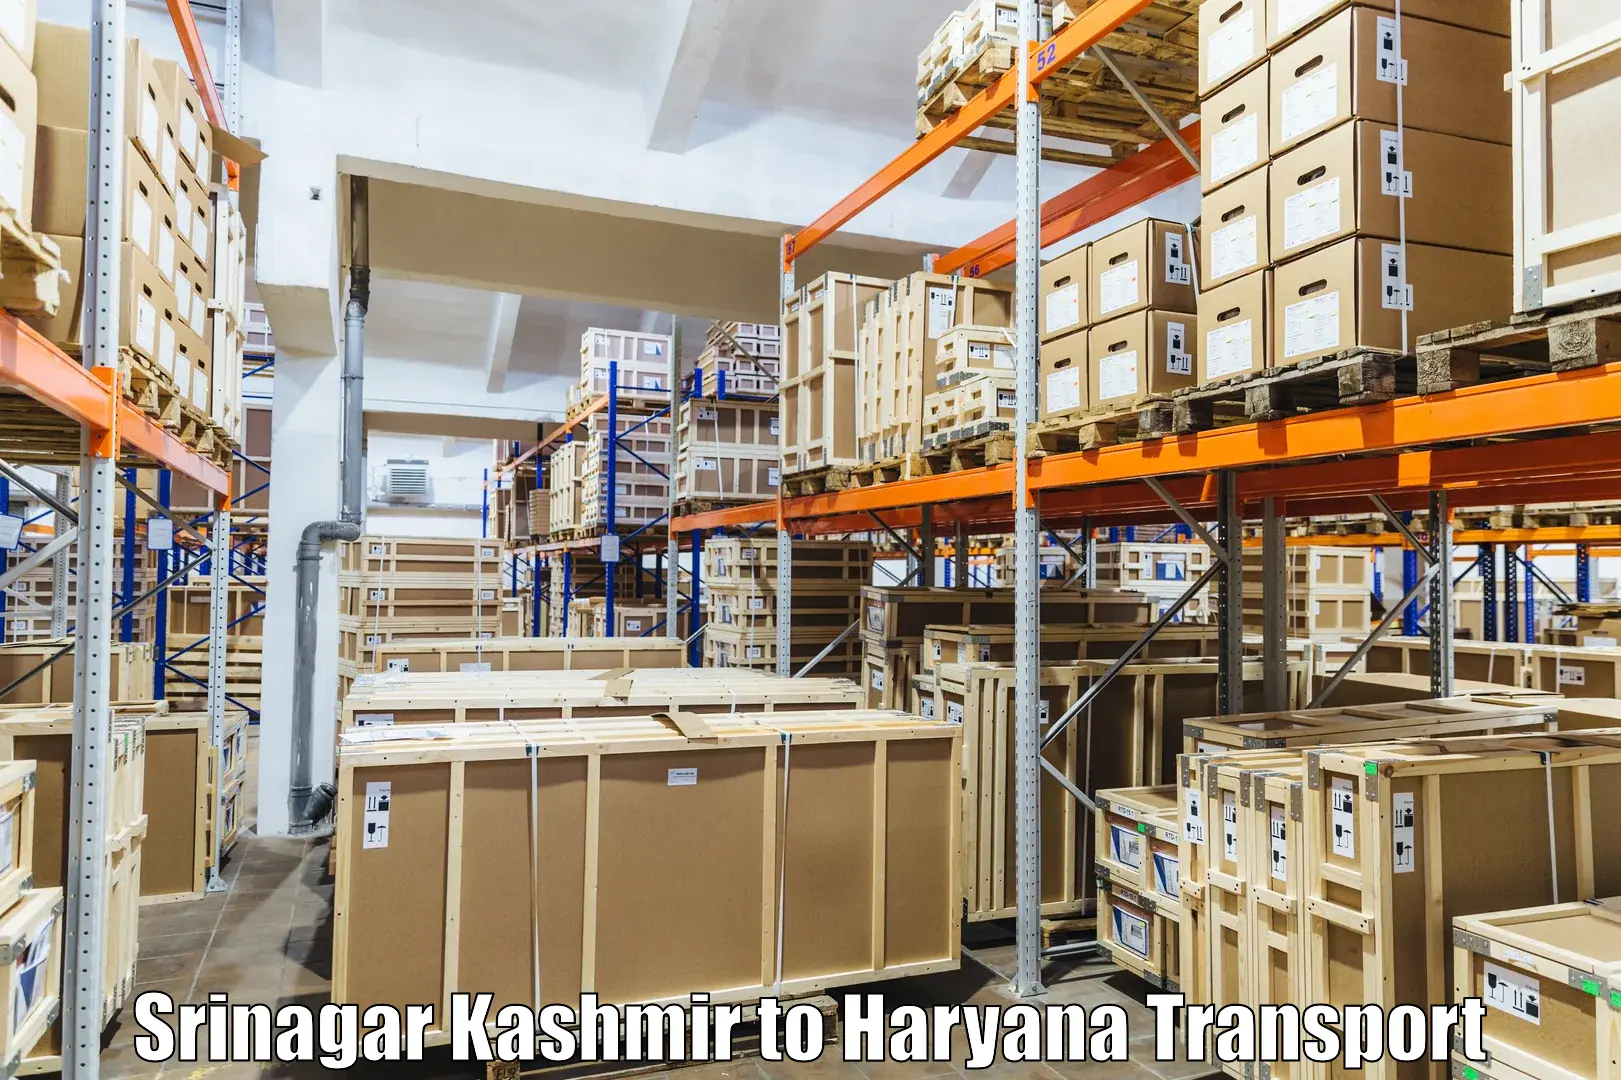 Vehicle transport services Srinagar Kashmir to Bilaspur Haryana